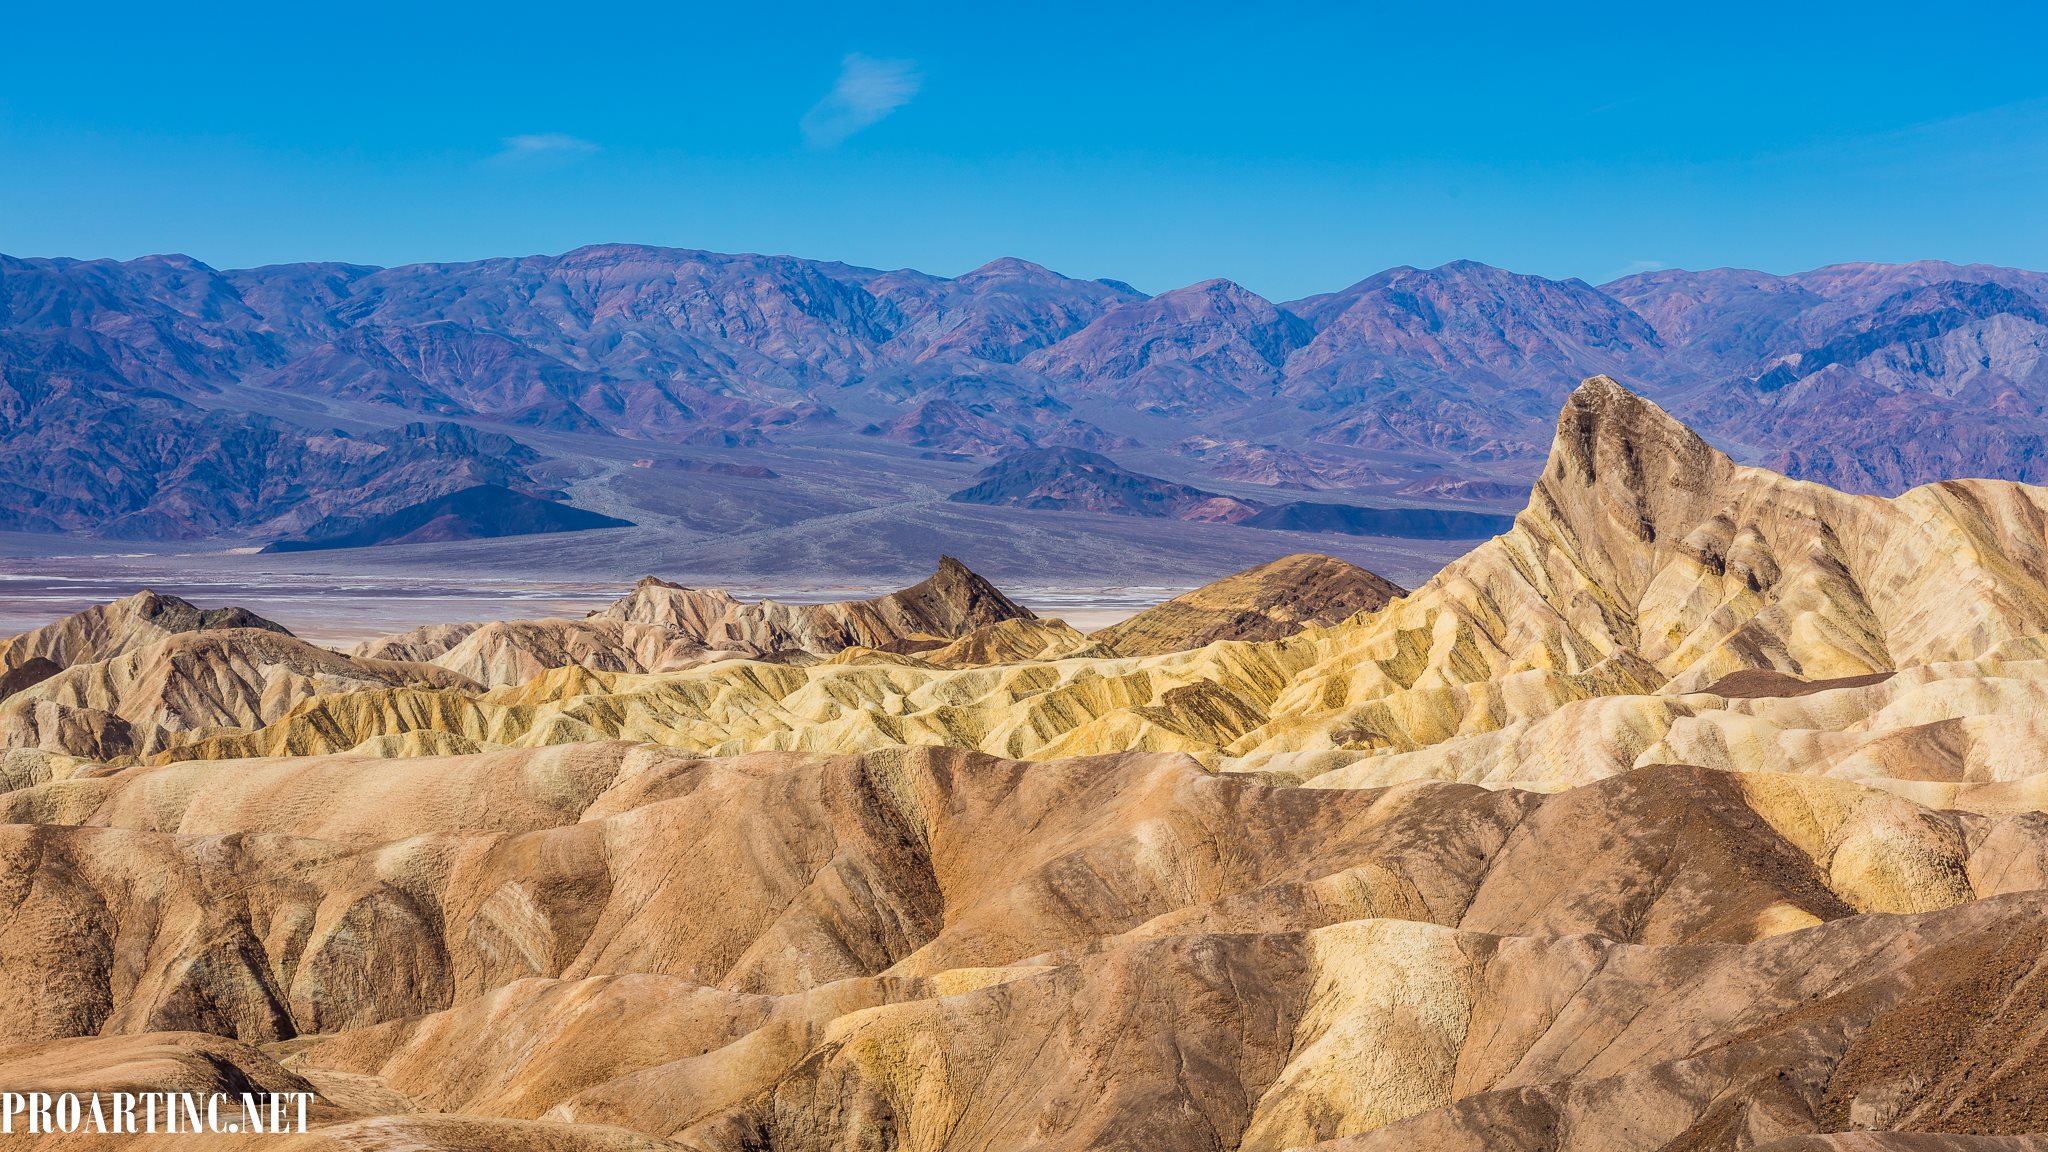 Zabriskie point, Death Valley National Park